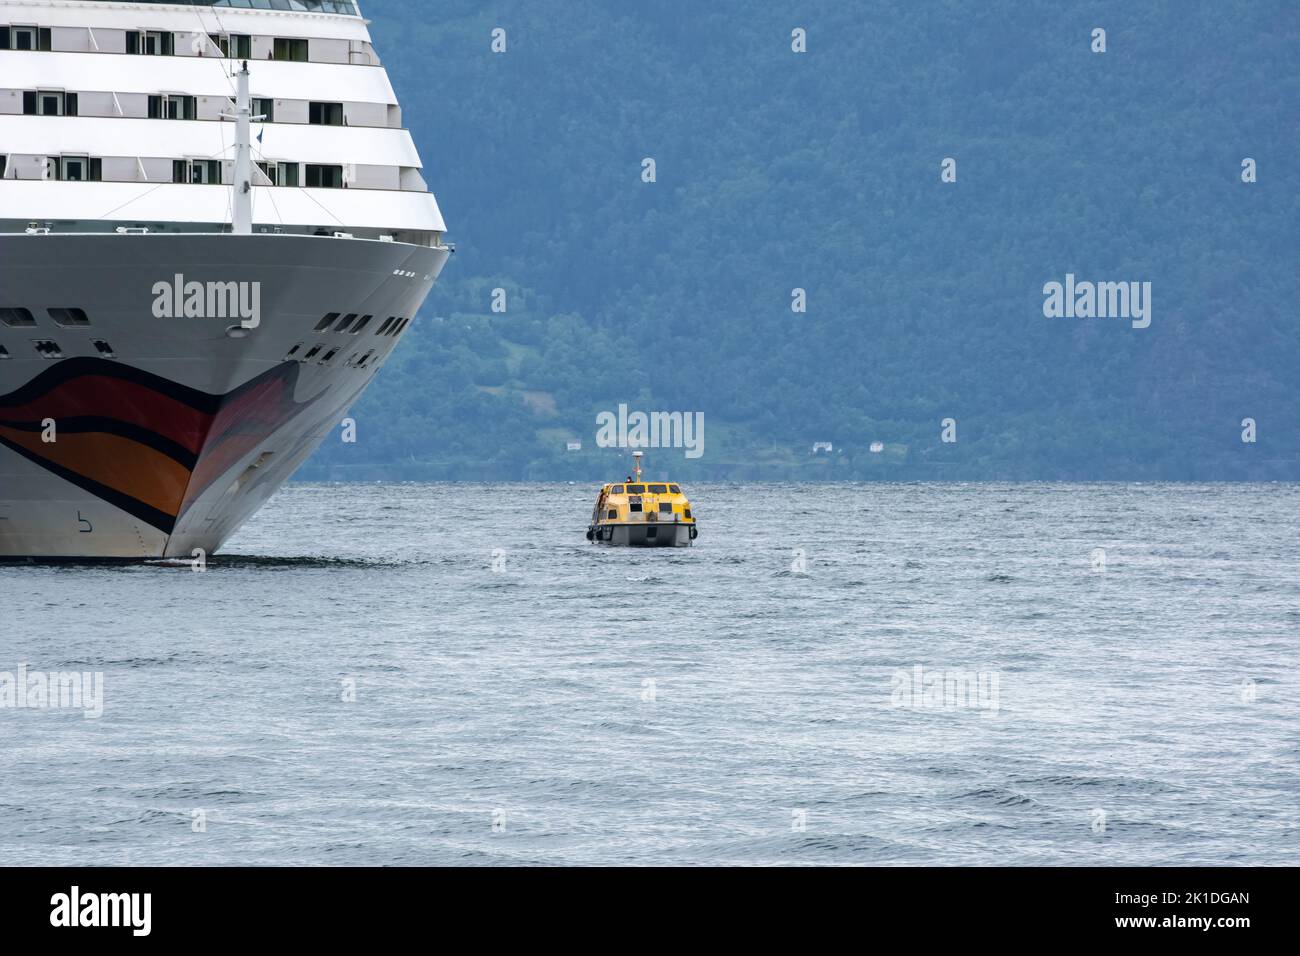 Vikoyri, Norwegen - 19. Juni 2022: Ein Aidamar-Kreuzfahrtboot in Schwierigkeiten, Passagiere mit kleinen Booten ans Ufer zu evakuieren. Regentag. Selektiver Fokus Stockfoto